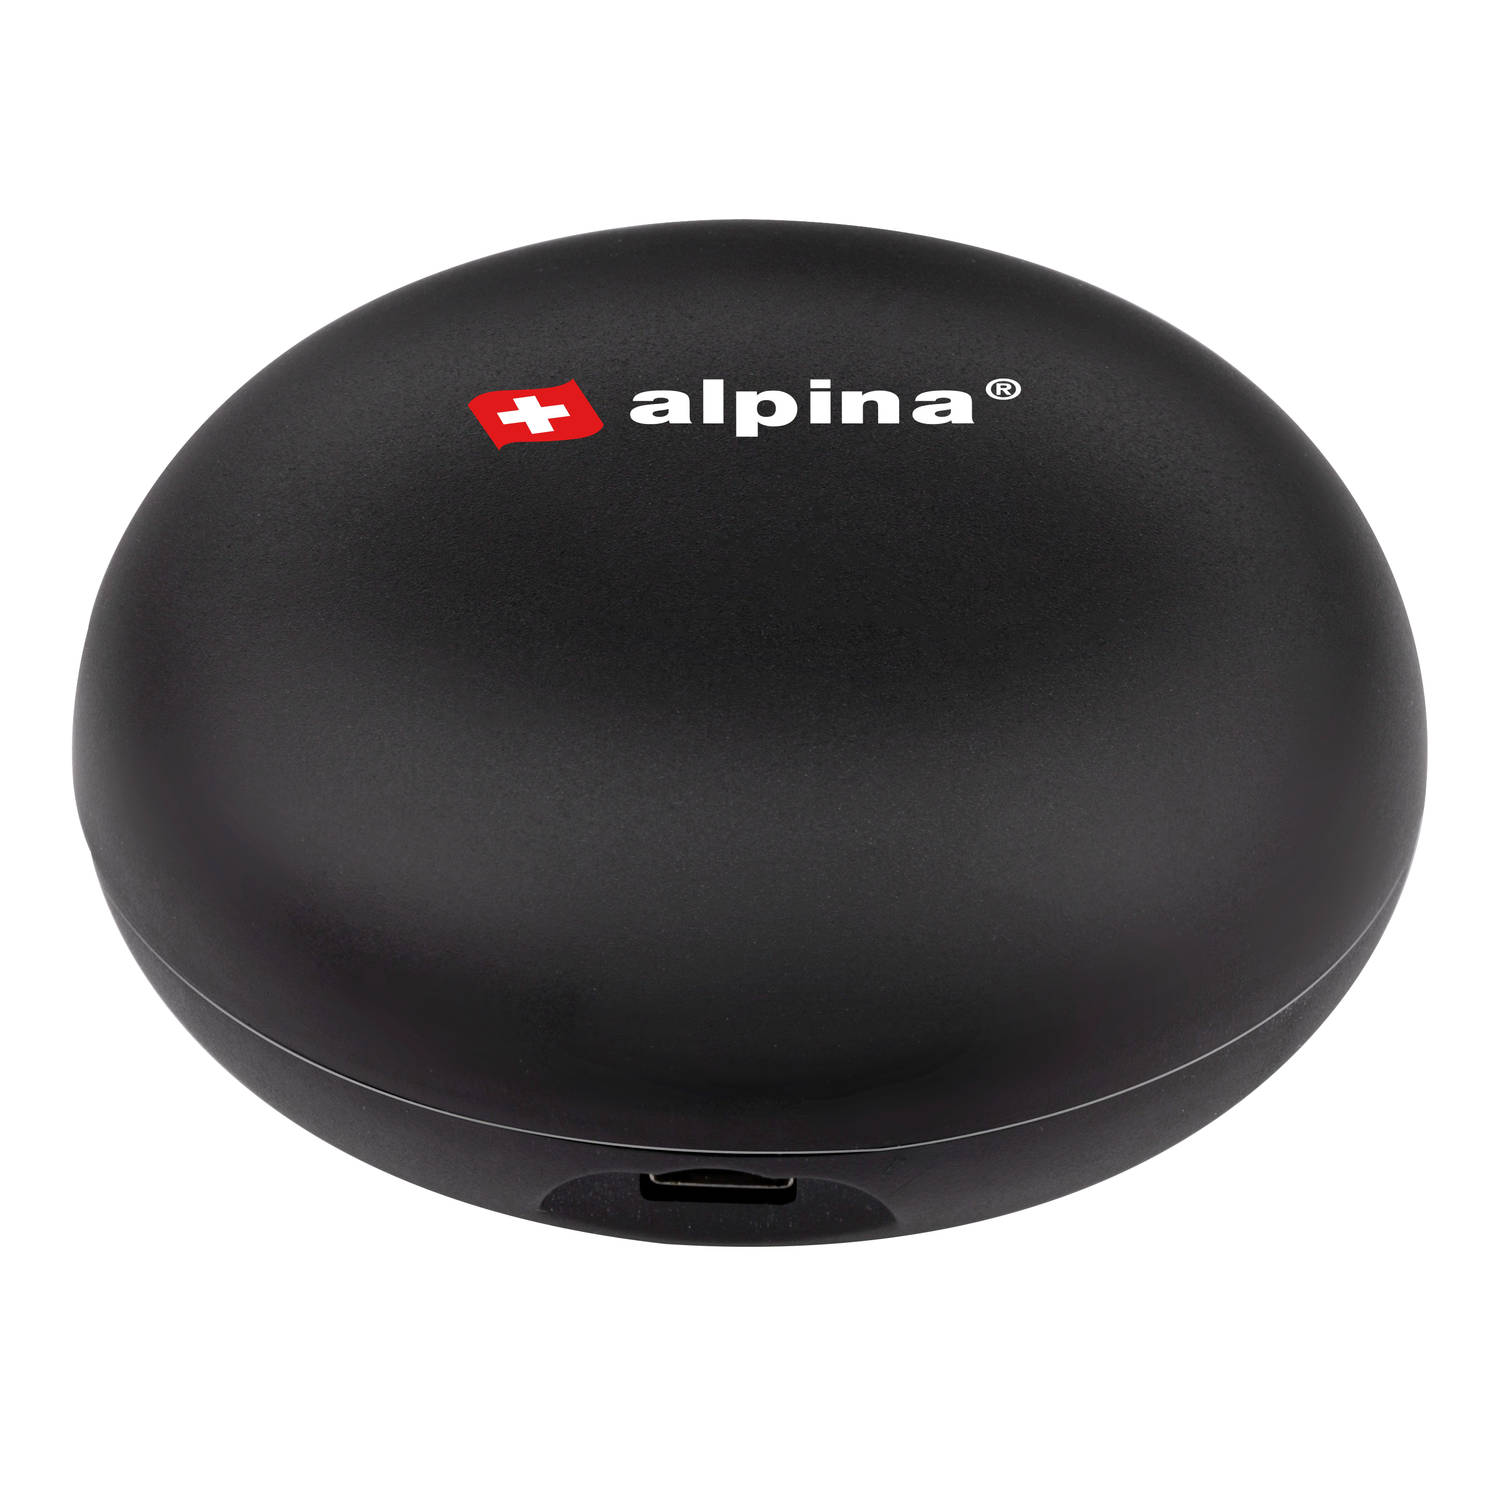 Alpina Smart Home Universele Afstandsbediening - Wifi - Timer - Compatibel met Amazon Alexa en Google Home